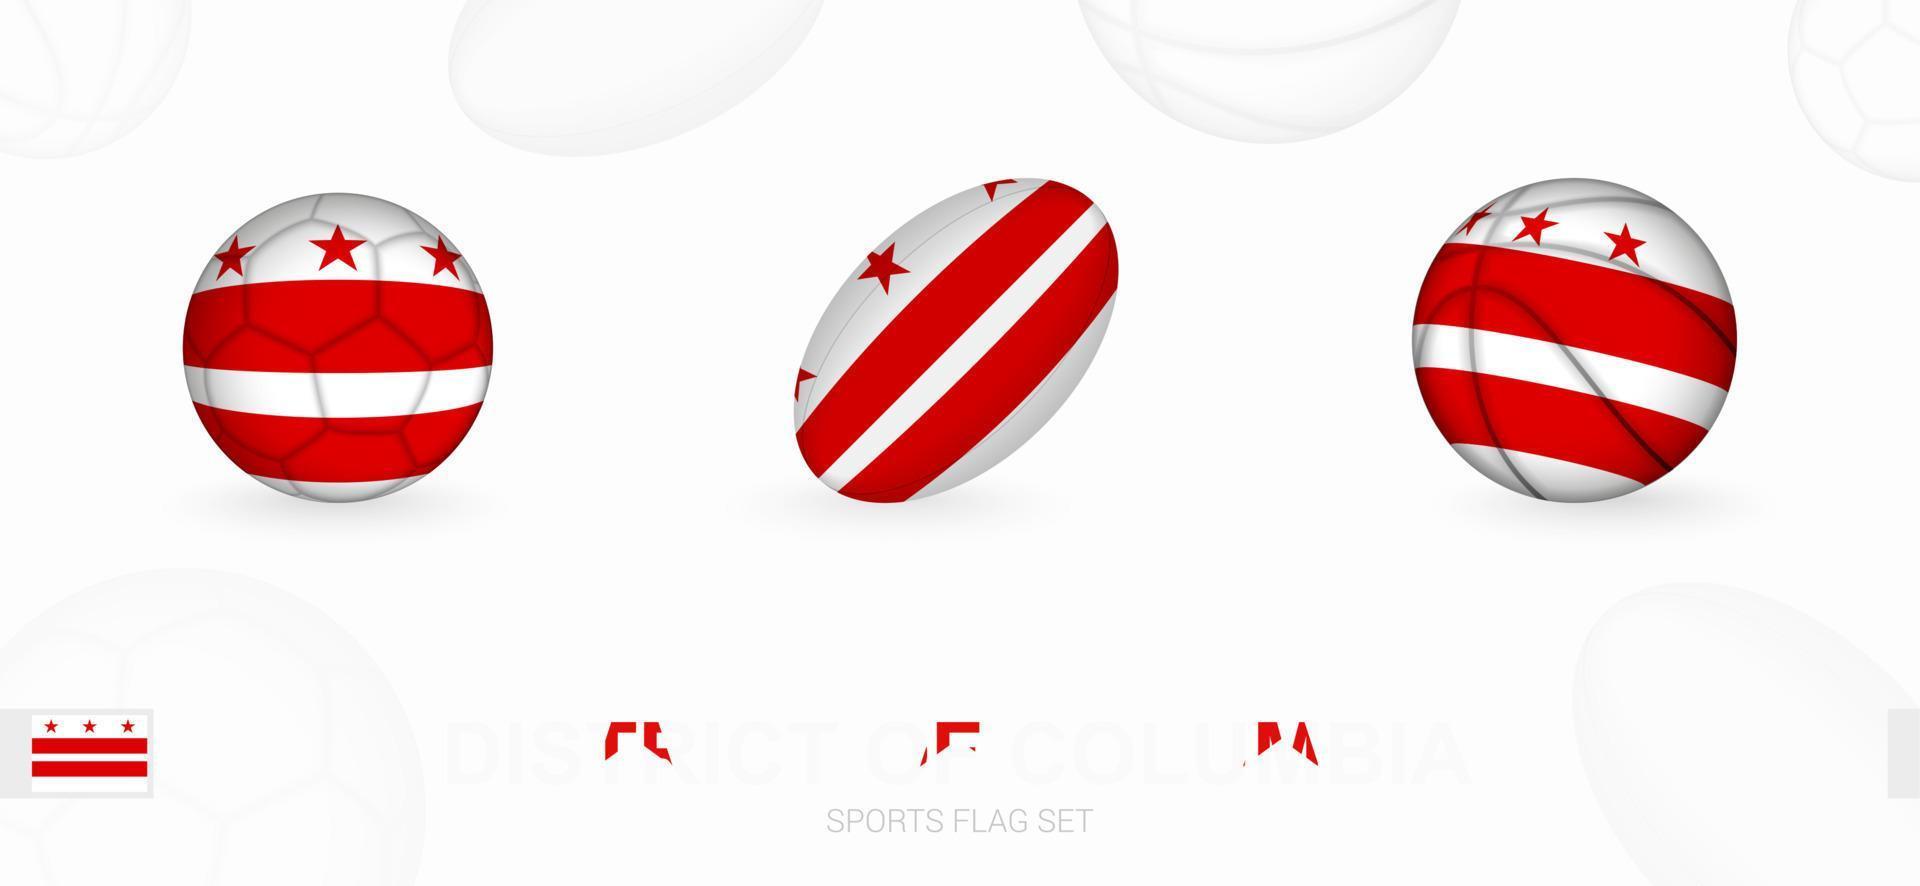 Deportes íconos para fútbol, rugby y baloncesto con el bandera de distrito de Columbia. vector